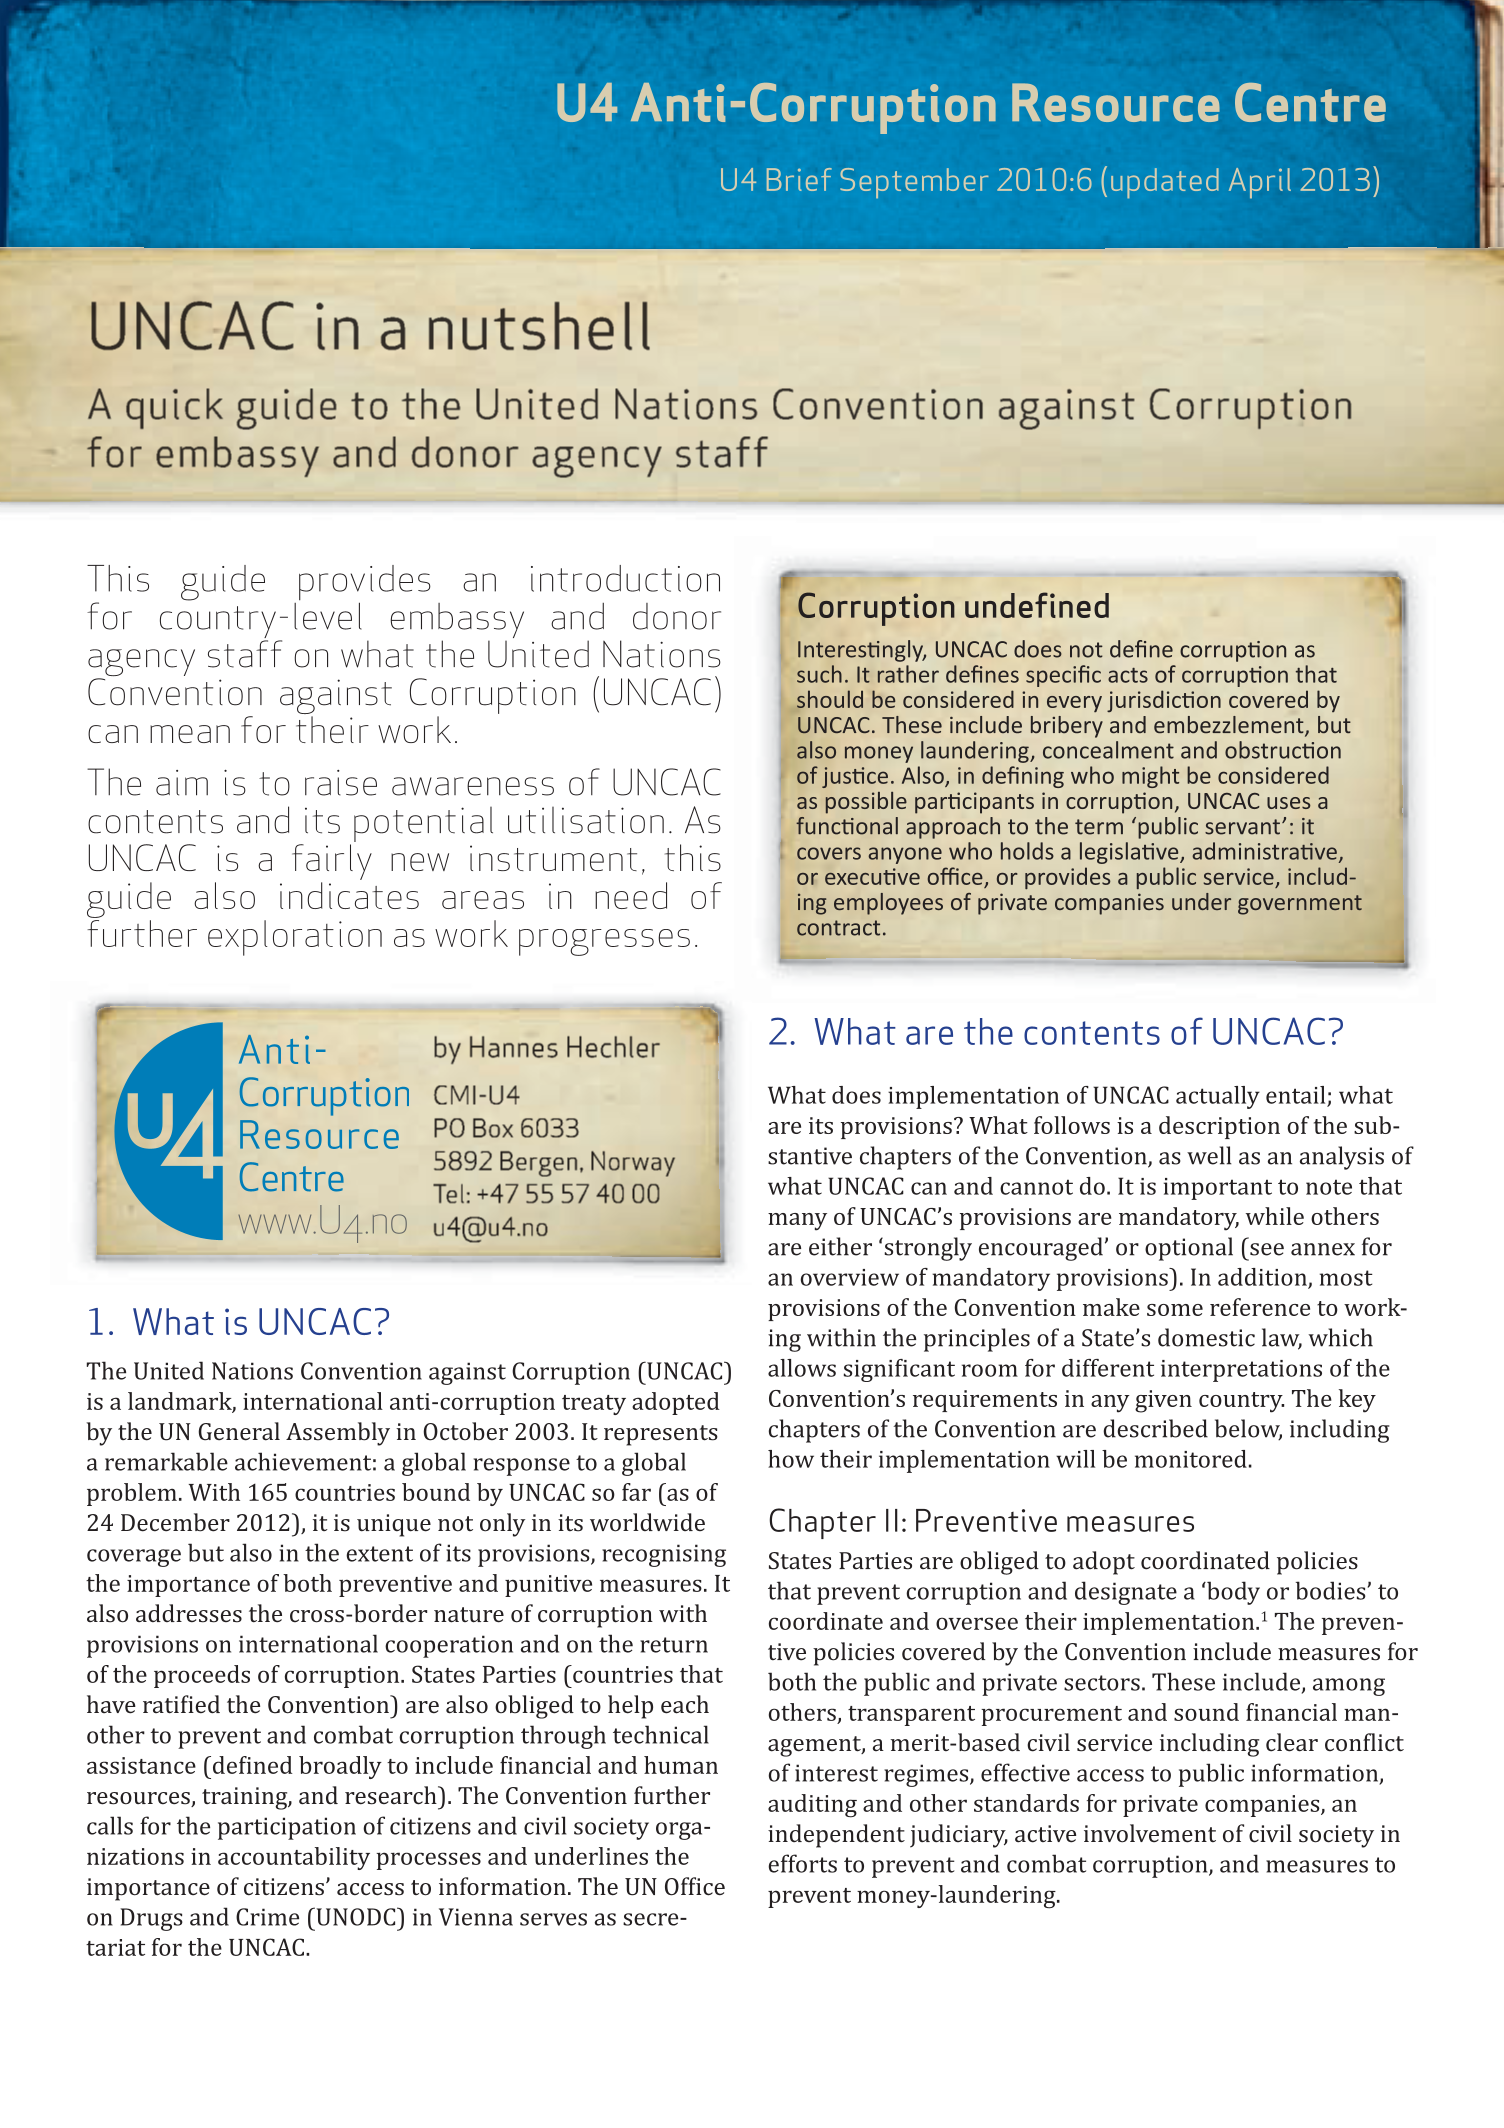 La UNCAC en breve. Una guía breve a la Convención de las Naciones Unidas contra la Corrupción para personal de embajadas y agencias donantes